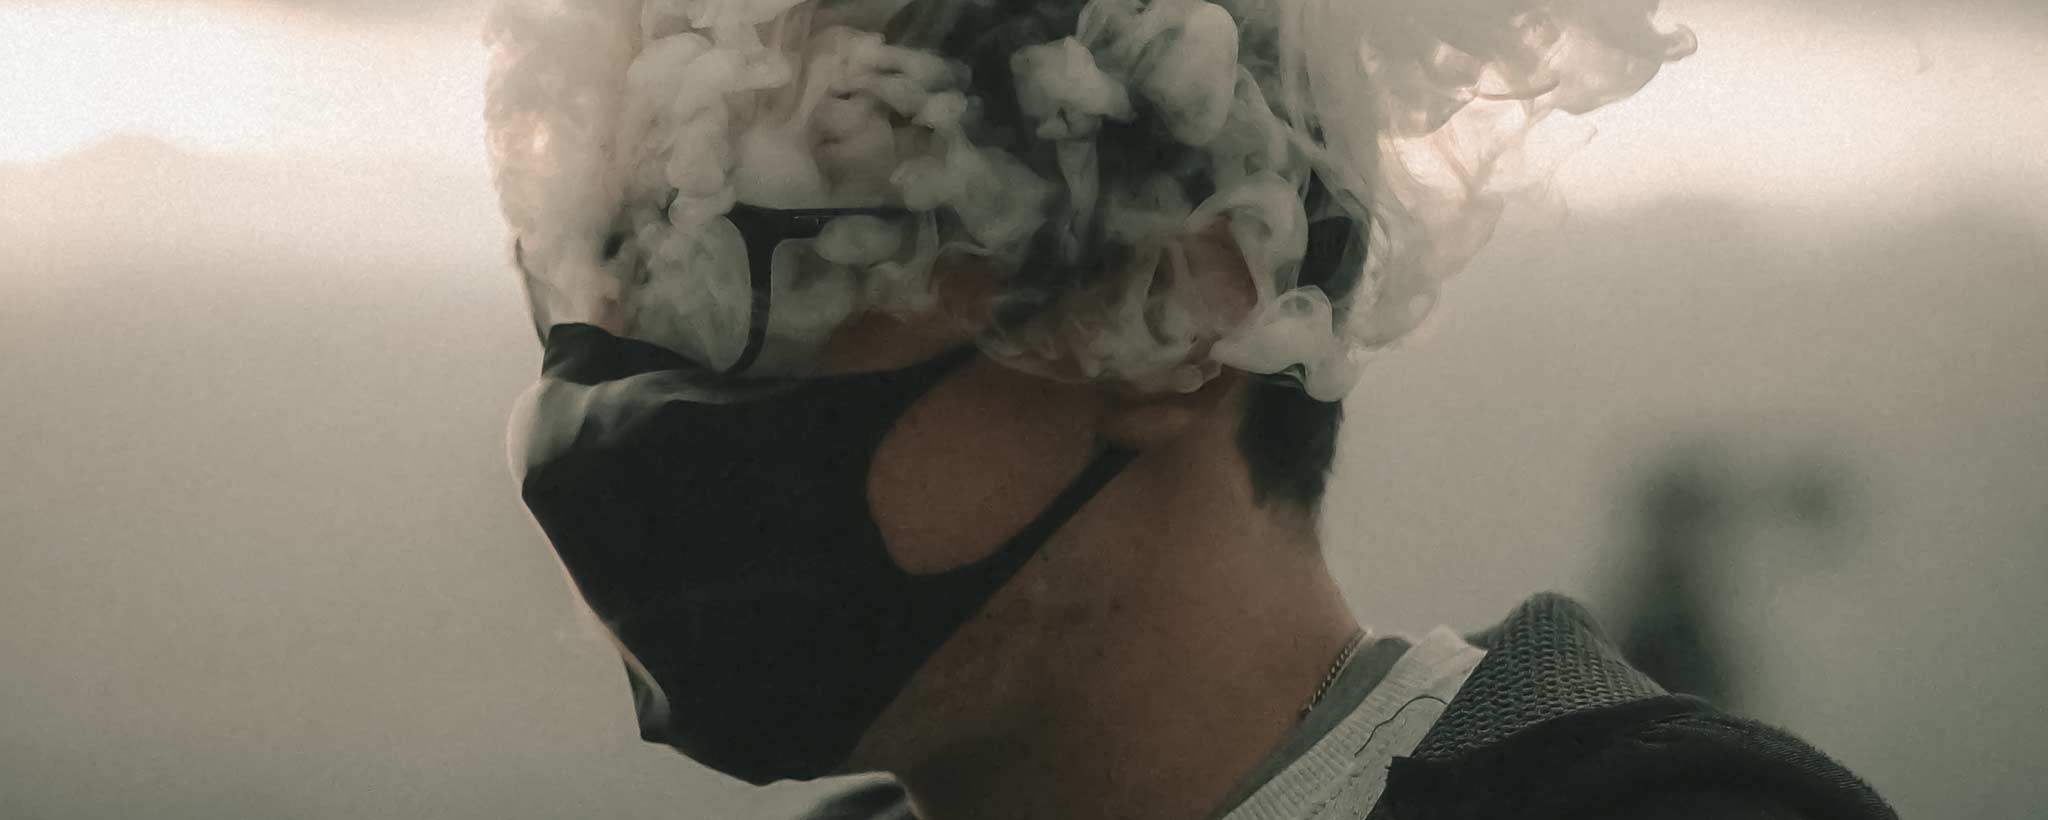 'Male portrait brain fog concept'